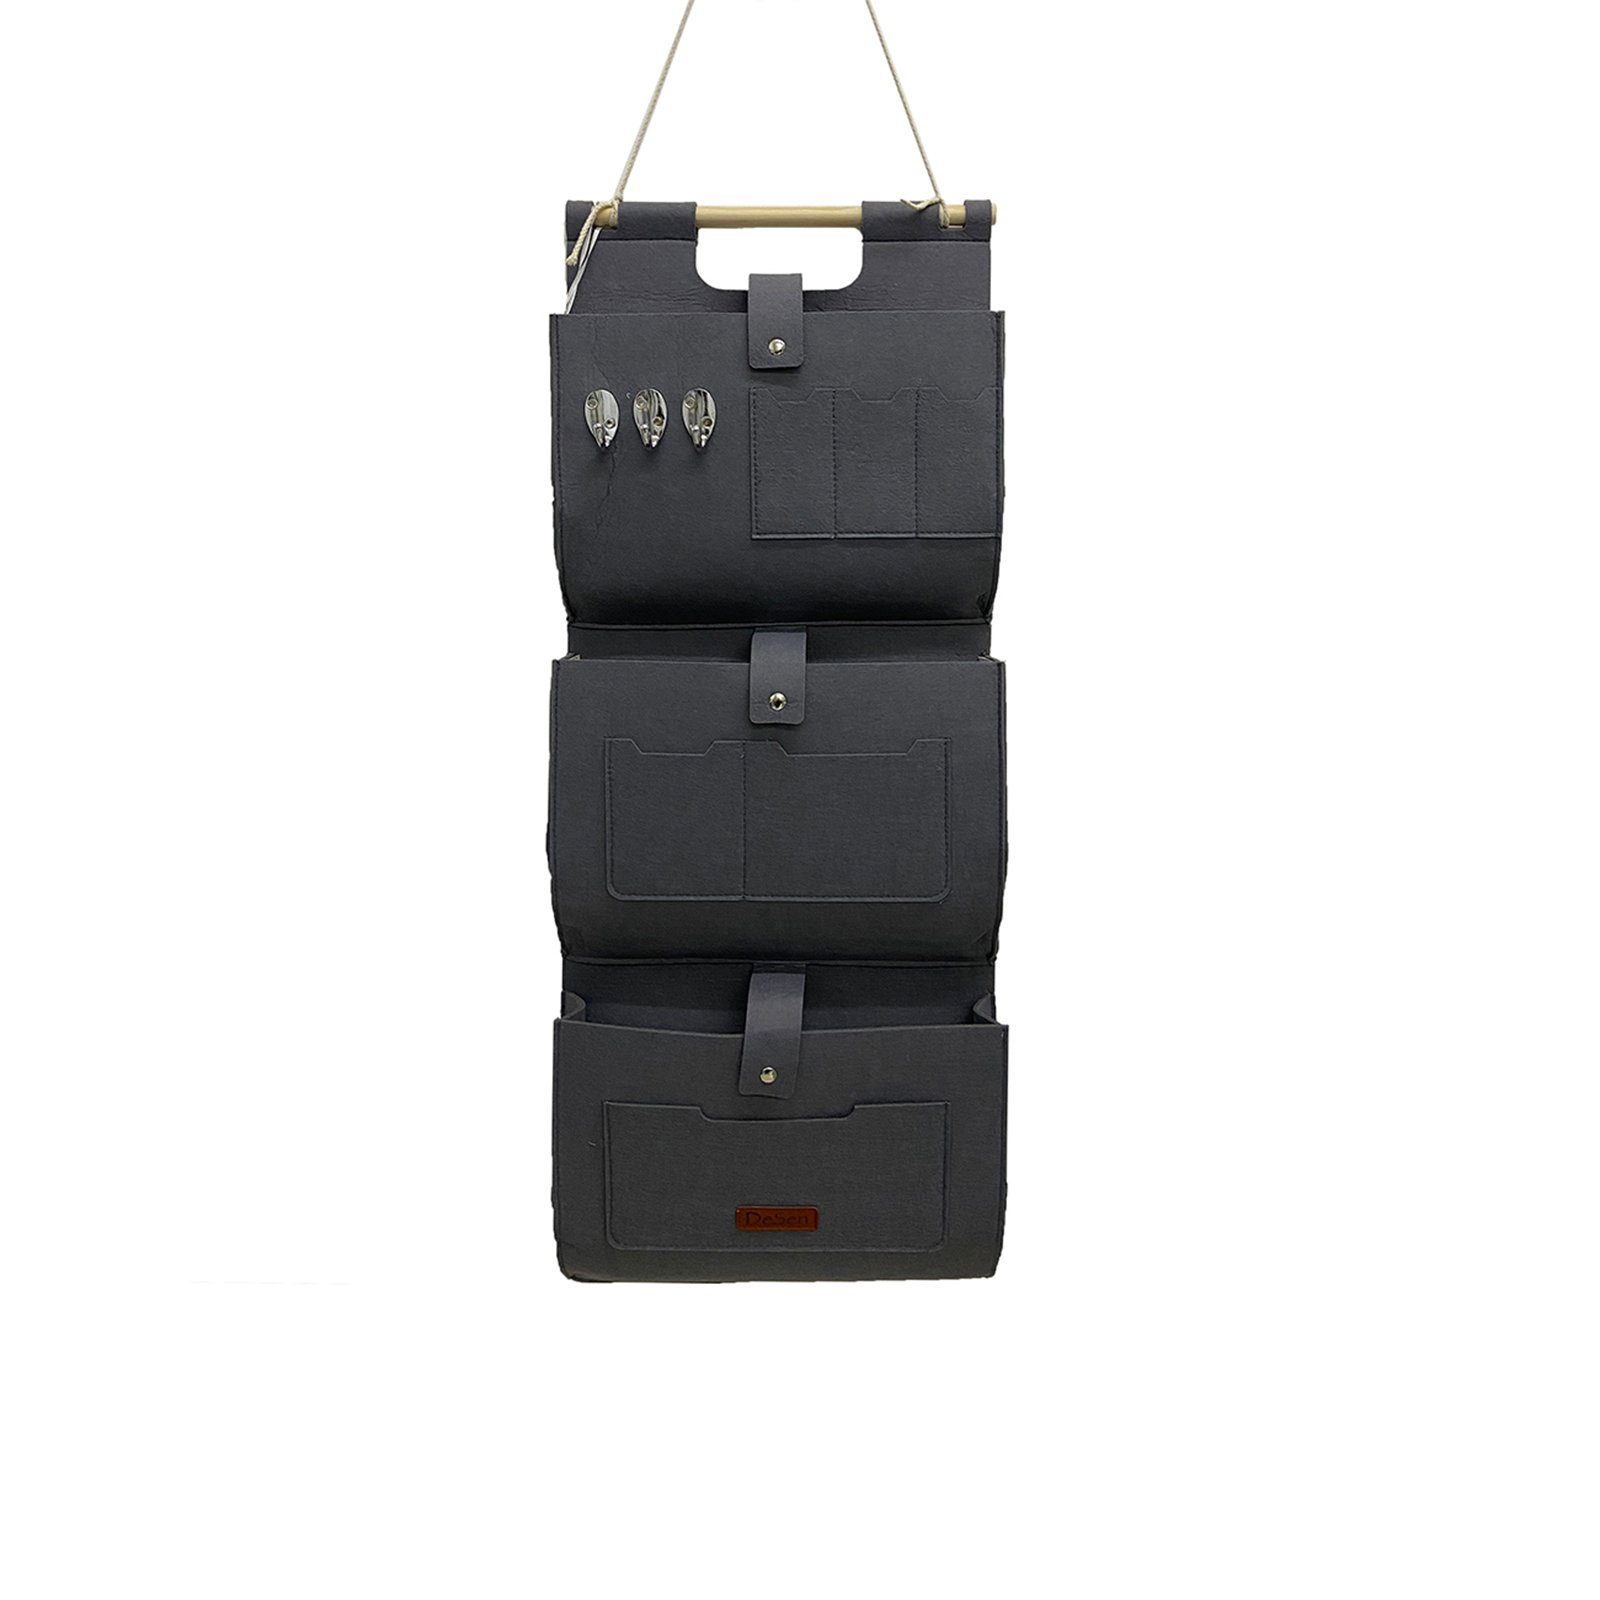 RAIKOU Aufbewahrungstasche Hängeorganzier für Tür und Wand / Wandtasche (für Garderobe,Bad, Küche), Multifunktionstaschen+3 Schlüsselanhänger